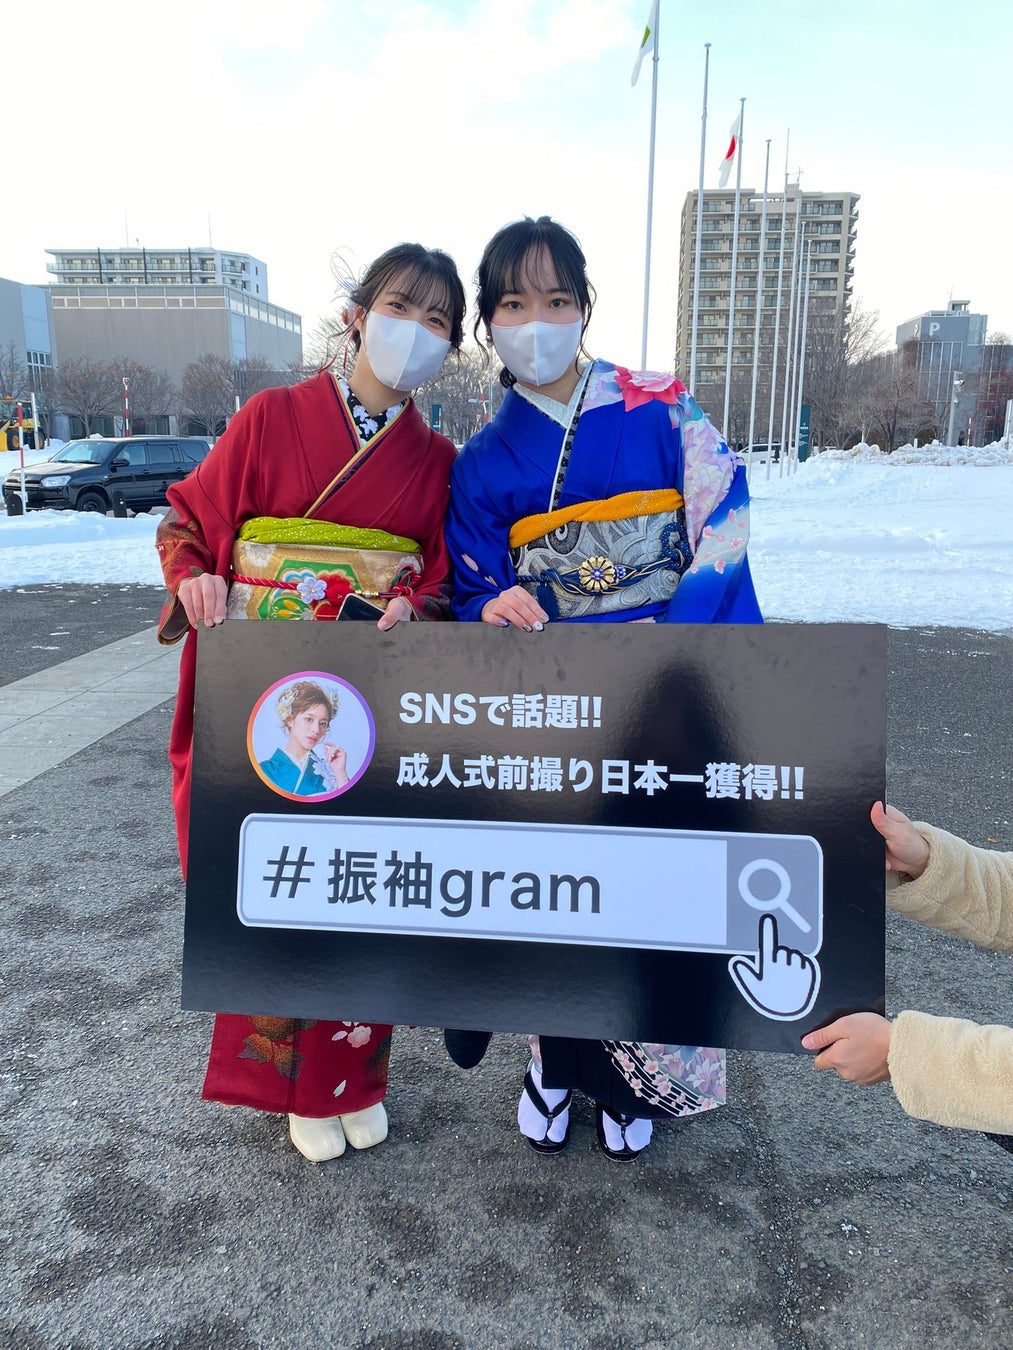 地元白石区の新成人の笑顔を残したい『#振袖gram』北海道札幌市白石区振袖記念写真プロジェクト企画のサブ画像8